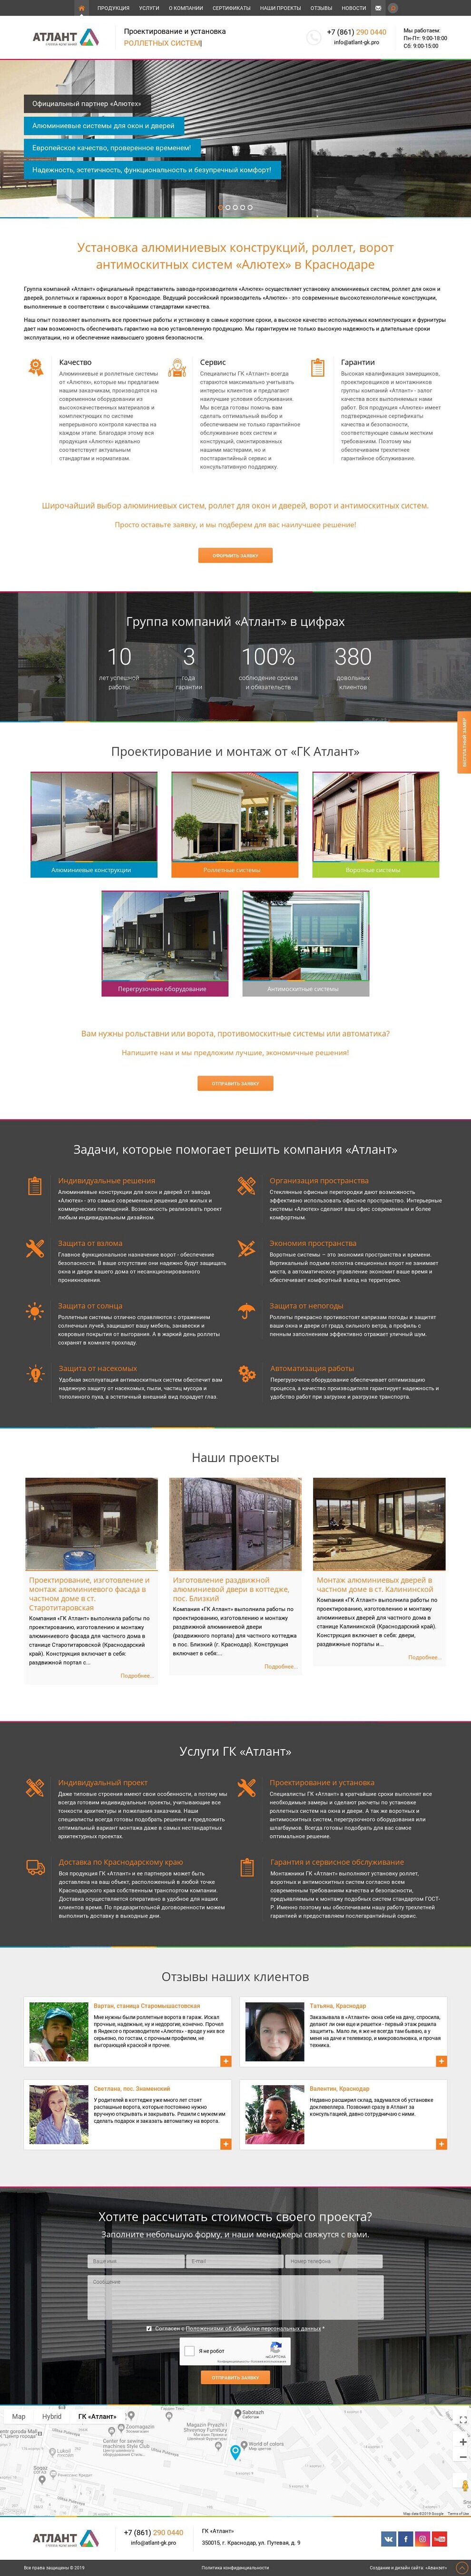 Создание корпоративного сайта строительной компании - официального партнера «Алютех» в Краснодаре